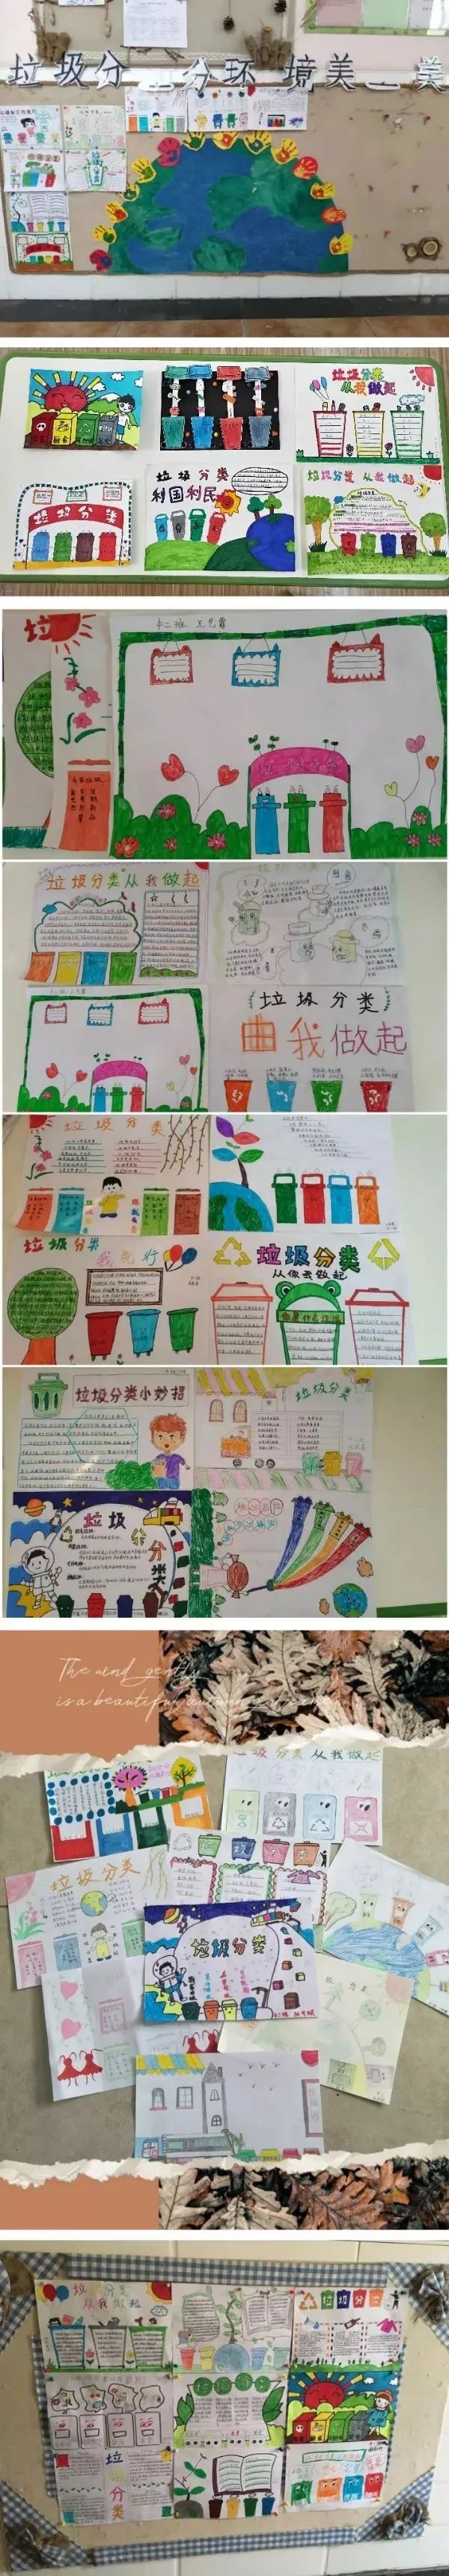 幼儿园垃圾分类手抄报和主题墙